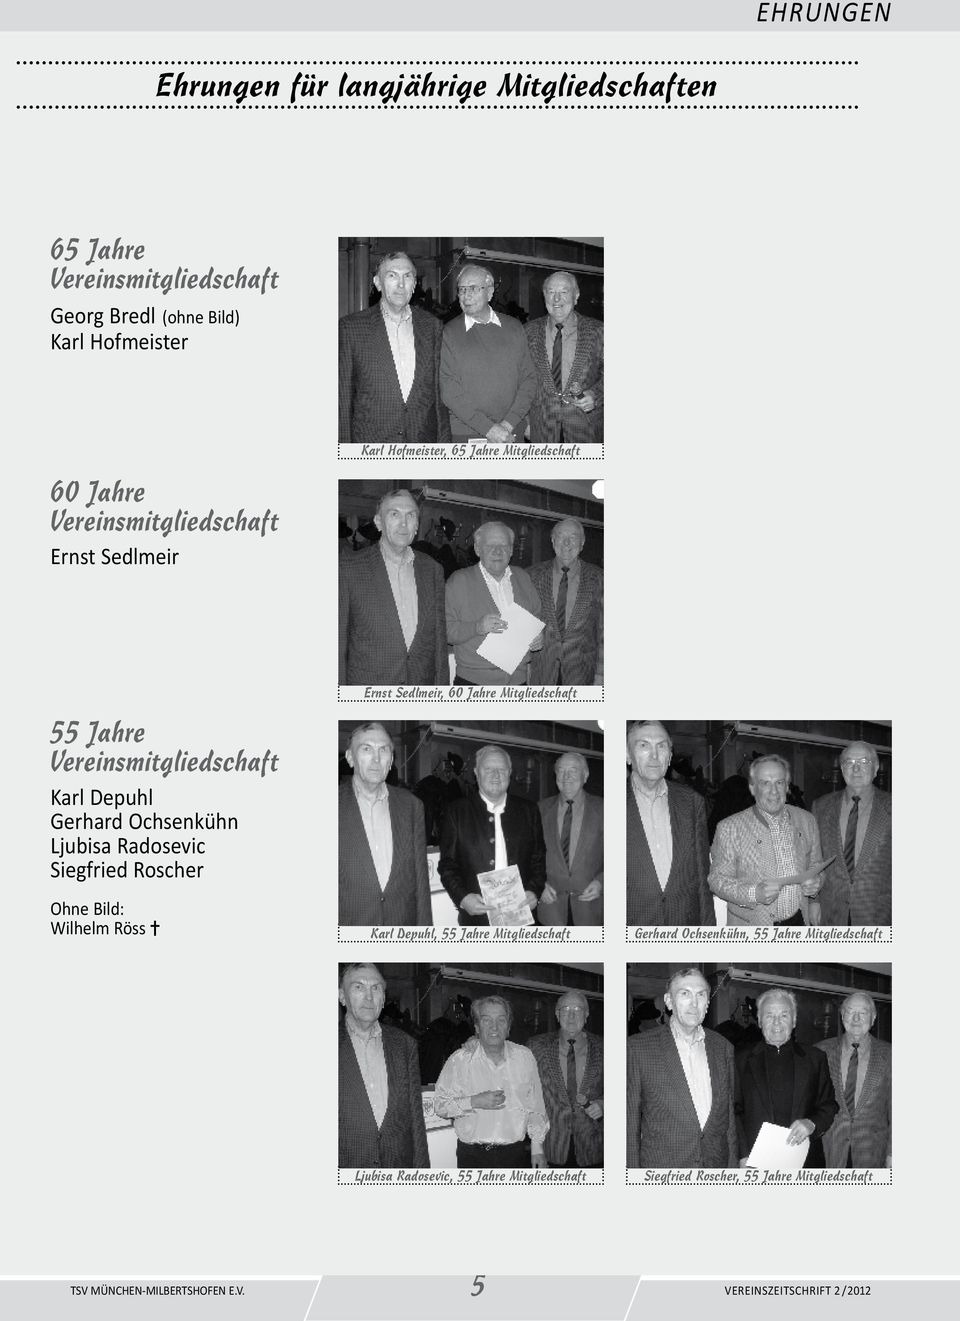 Ljubisa Radosevic Siegfried Roscher Ohne Bild: Wilhelm Röss = Ernst Sedlmeir, 60 Jahre Mitgliedschaft Karl Depuhl, 55 Jahre Mitgliedschaft